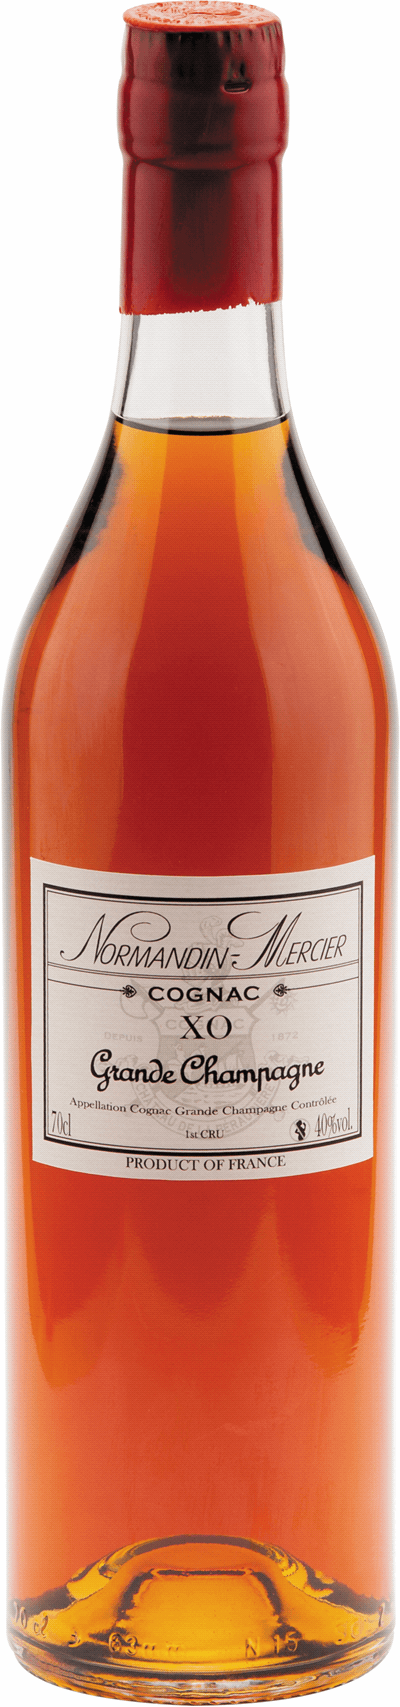 Normandin Mercier Grande Champagne XO